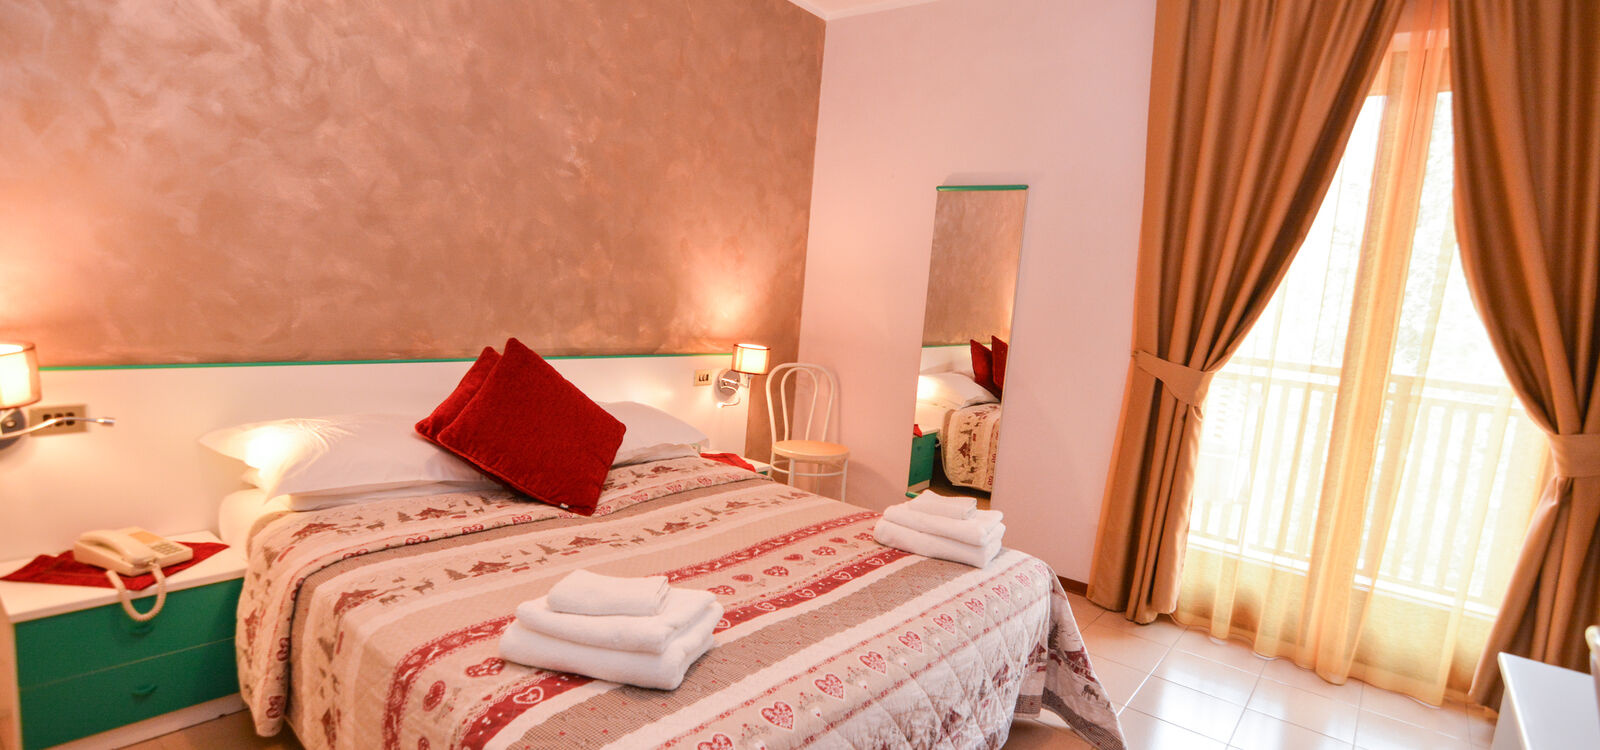 Hotel Cima d'Oro 3 stelle vicino al lago di Ledro, Trentino Valle di Ledro - Camera Economy